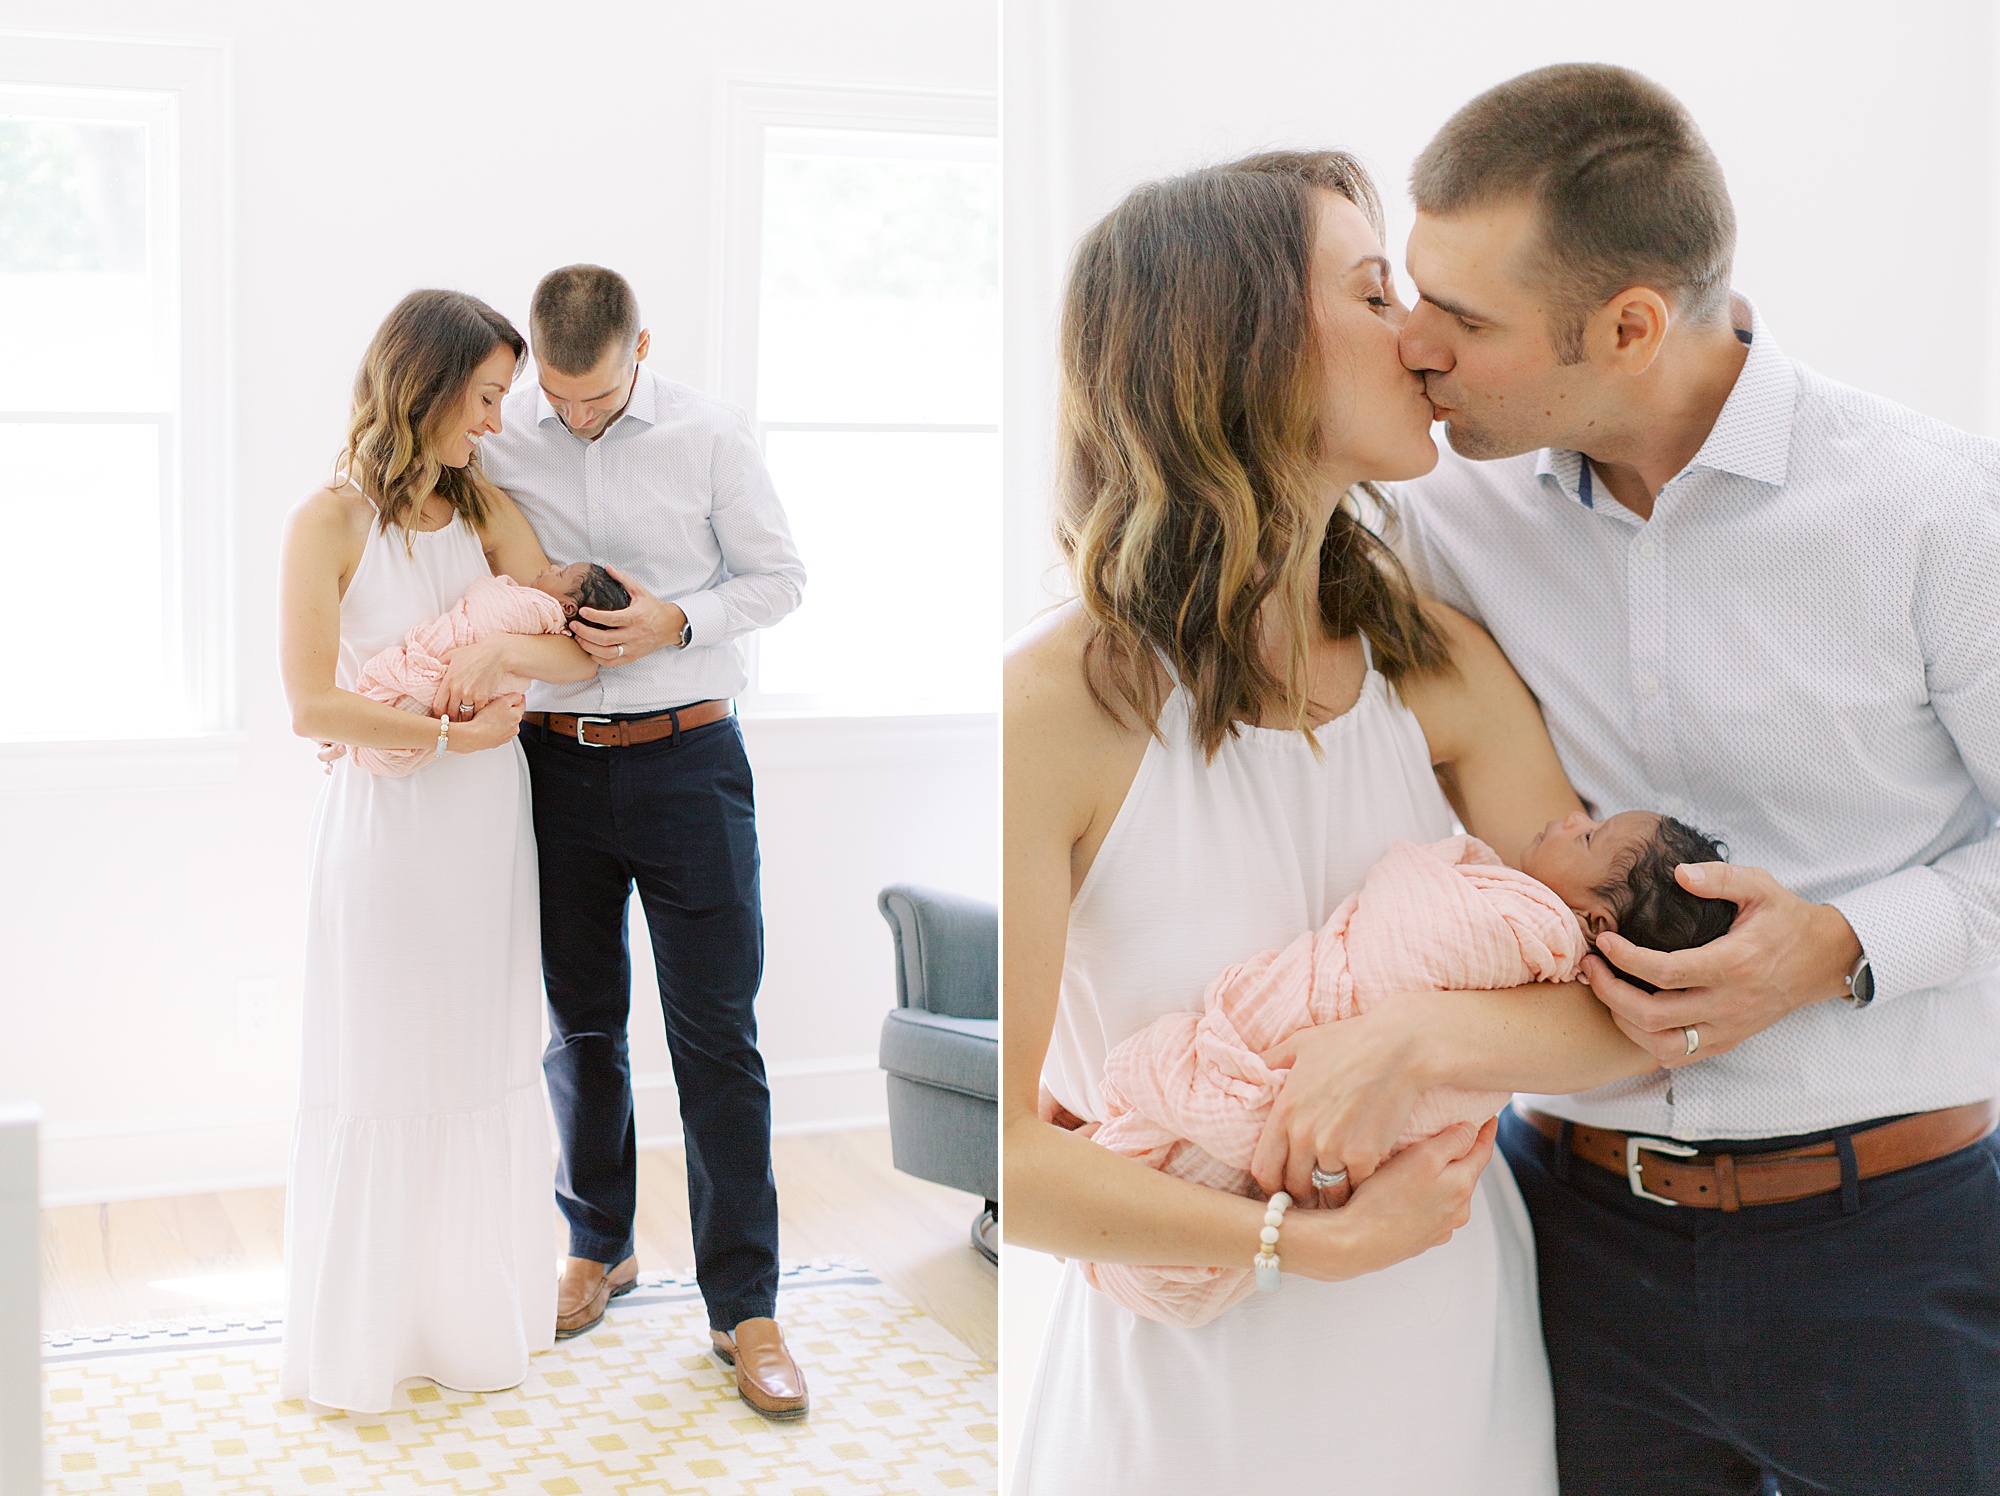 parents kiss during newborn photos at home